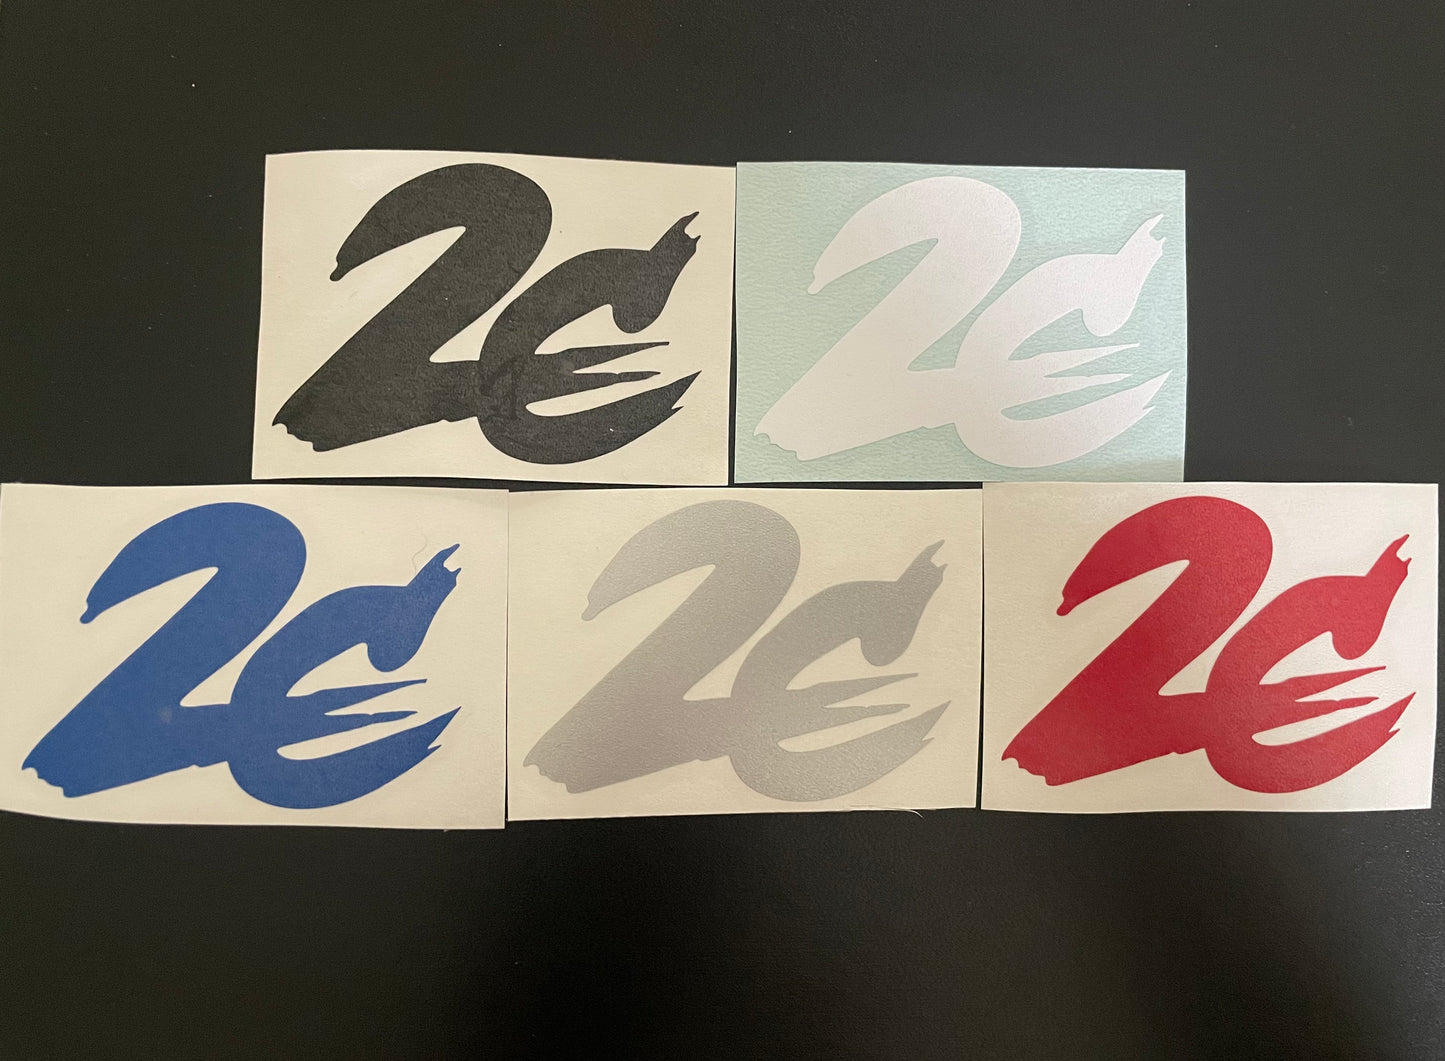 2C Stickers